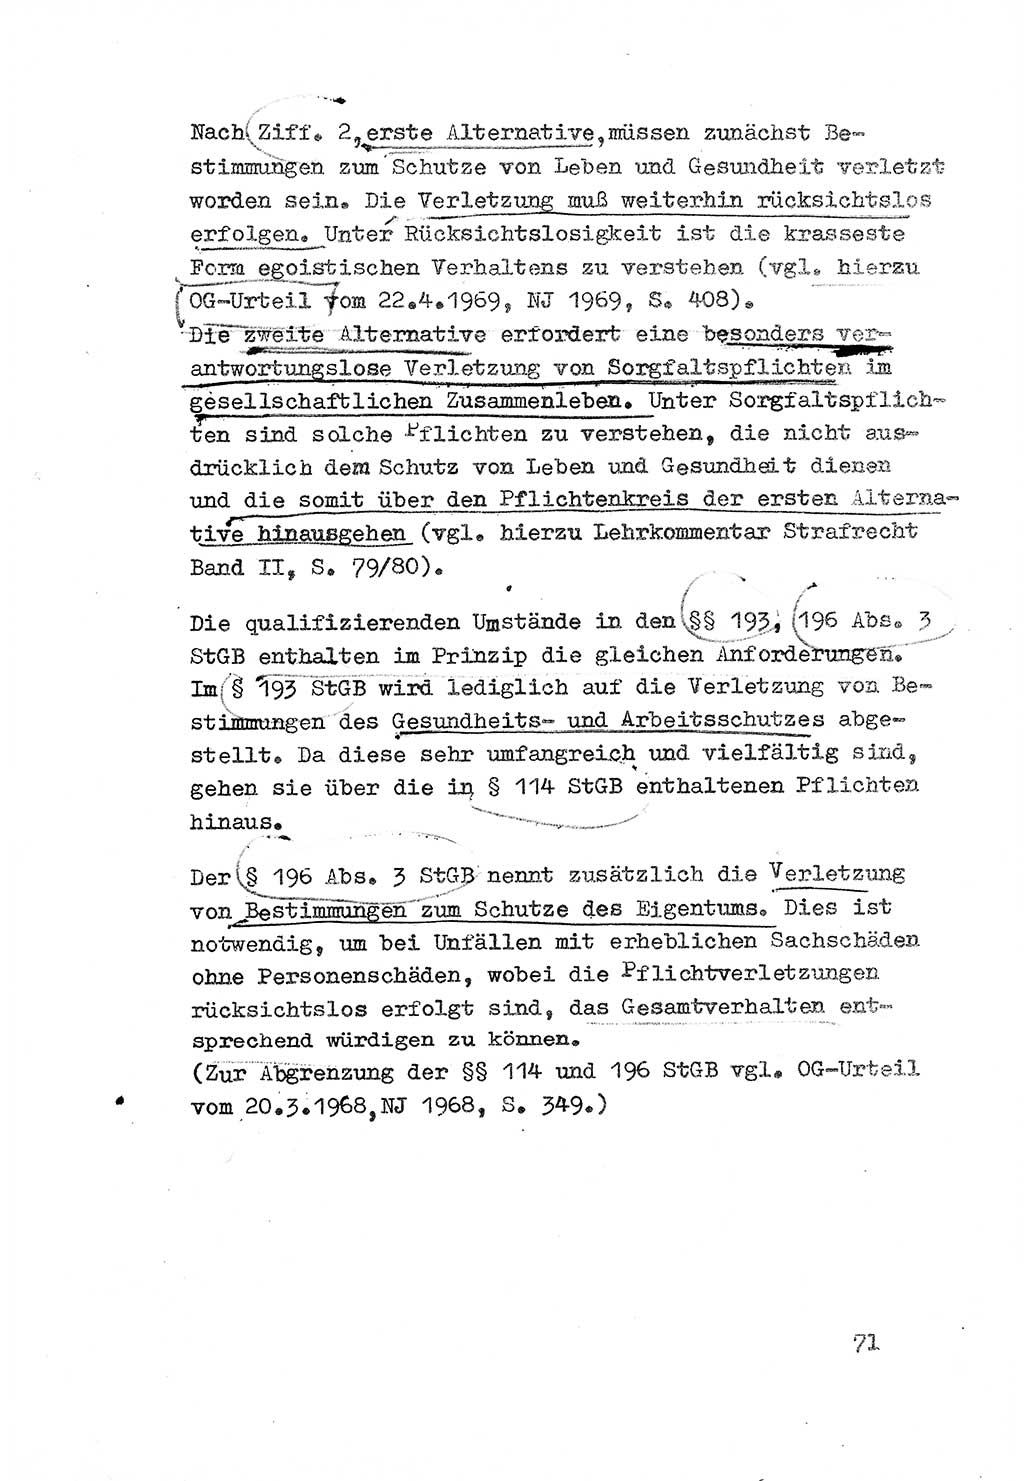 Strafrecht der DDR (Deutsche Demokratische Republik), Besonderer Teil, Lehrmaterial, Heft 3 1969, Seite 71 (Strafr. DDR BT Lehrmat. H. 3 1969, S. 71)